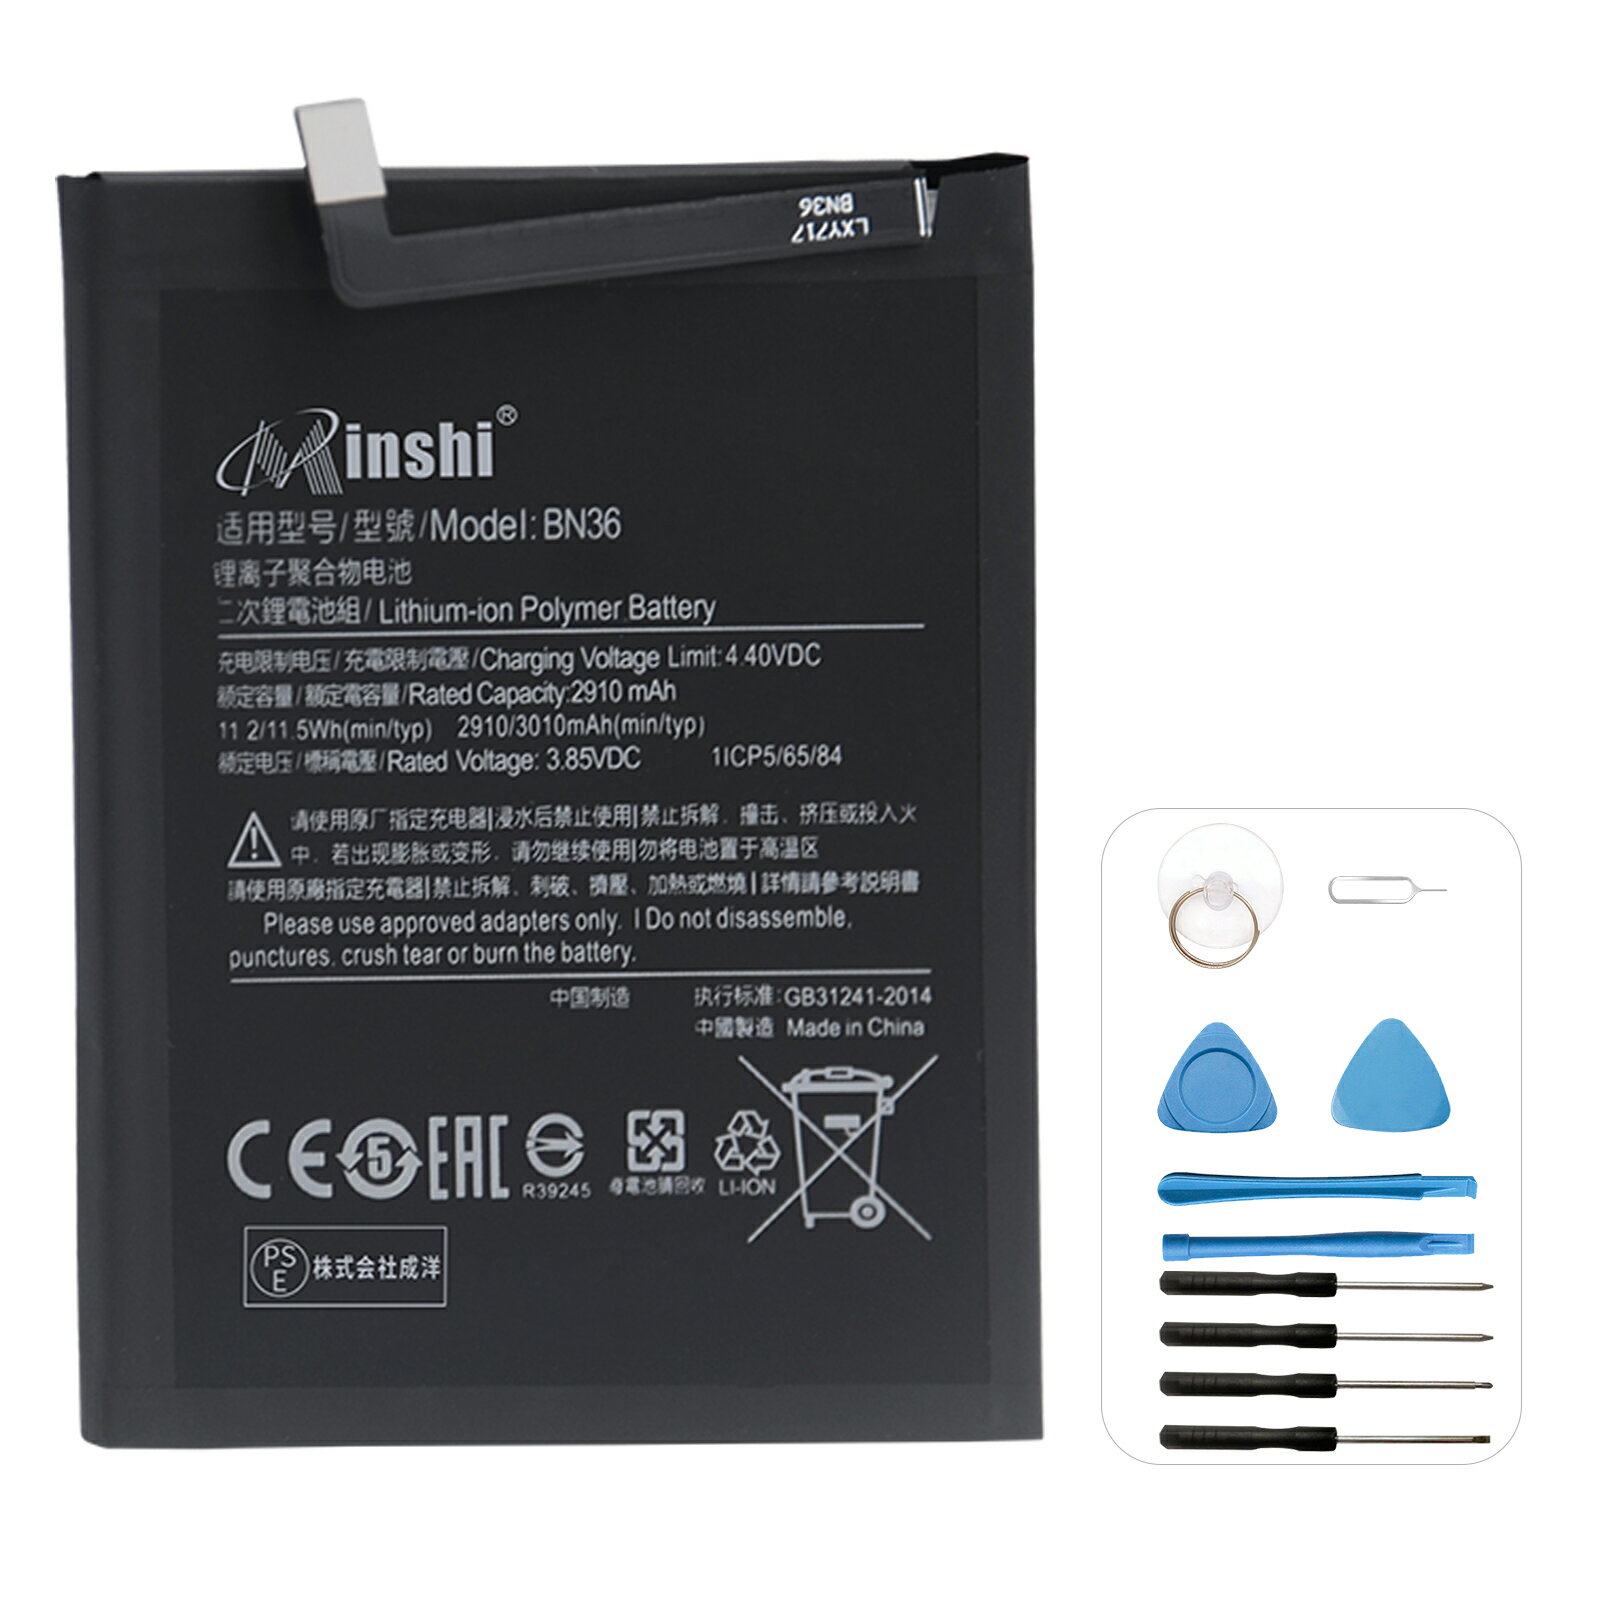 商品の詳細 対応メーカー名： XIAOMI対応 保証期間： お買い上げ日より1年間 電池： Li-ion 保護回路： 過充電、過放電、過電流などの保護回路が内蔵 電圧： 3.85V 容量： 2910mAh PSマークの種類： PSE 届出事業者名： 株式会社成洋 対応機種： XiaomiMi 6X XiaomiMi A2,BN36 商品モデル番号： BN36 注意事項： ●外観が似ている金額が異なる商品が存在しますが、内部構造が違いため、使用上が違いはありません、ご安心くださいませ。 ●弊社商品は製造年月及び製品の世代更新のでpse申告業者は以下となります：トヨバンク株式会社、株式会社成洋など。品質的には問題ございませんので、ご安心ください。 ●弊社の商品は多サイトで同時に販売している、他の倉庫から出荷の手配を依頼する可能性があり、弊社の出荷予定時間を参考にしてください。 ●パソコンの型番によって、アップデートで認識されない場合もあります。本体機種の型番と純正バッテリーの型番は両方を確認お願いします。 ●ご購入前に、何かご不明点やご希望などございましたら、どうぞお気軽にお問合せ下さいませ。